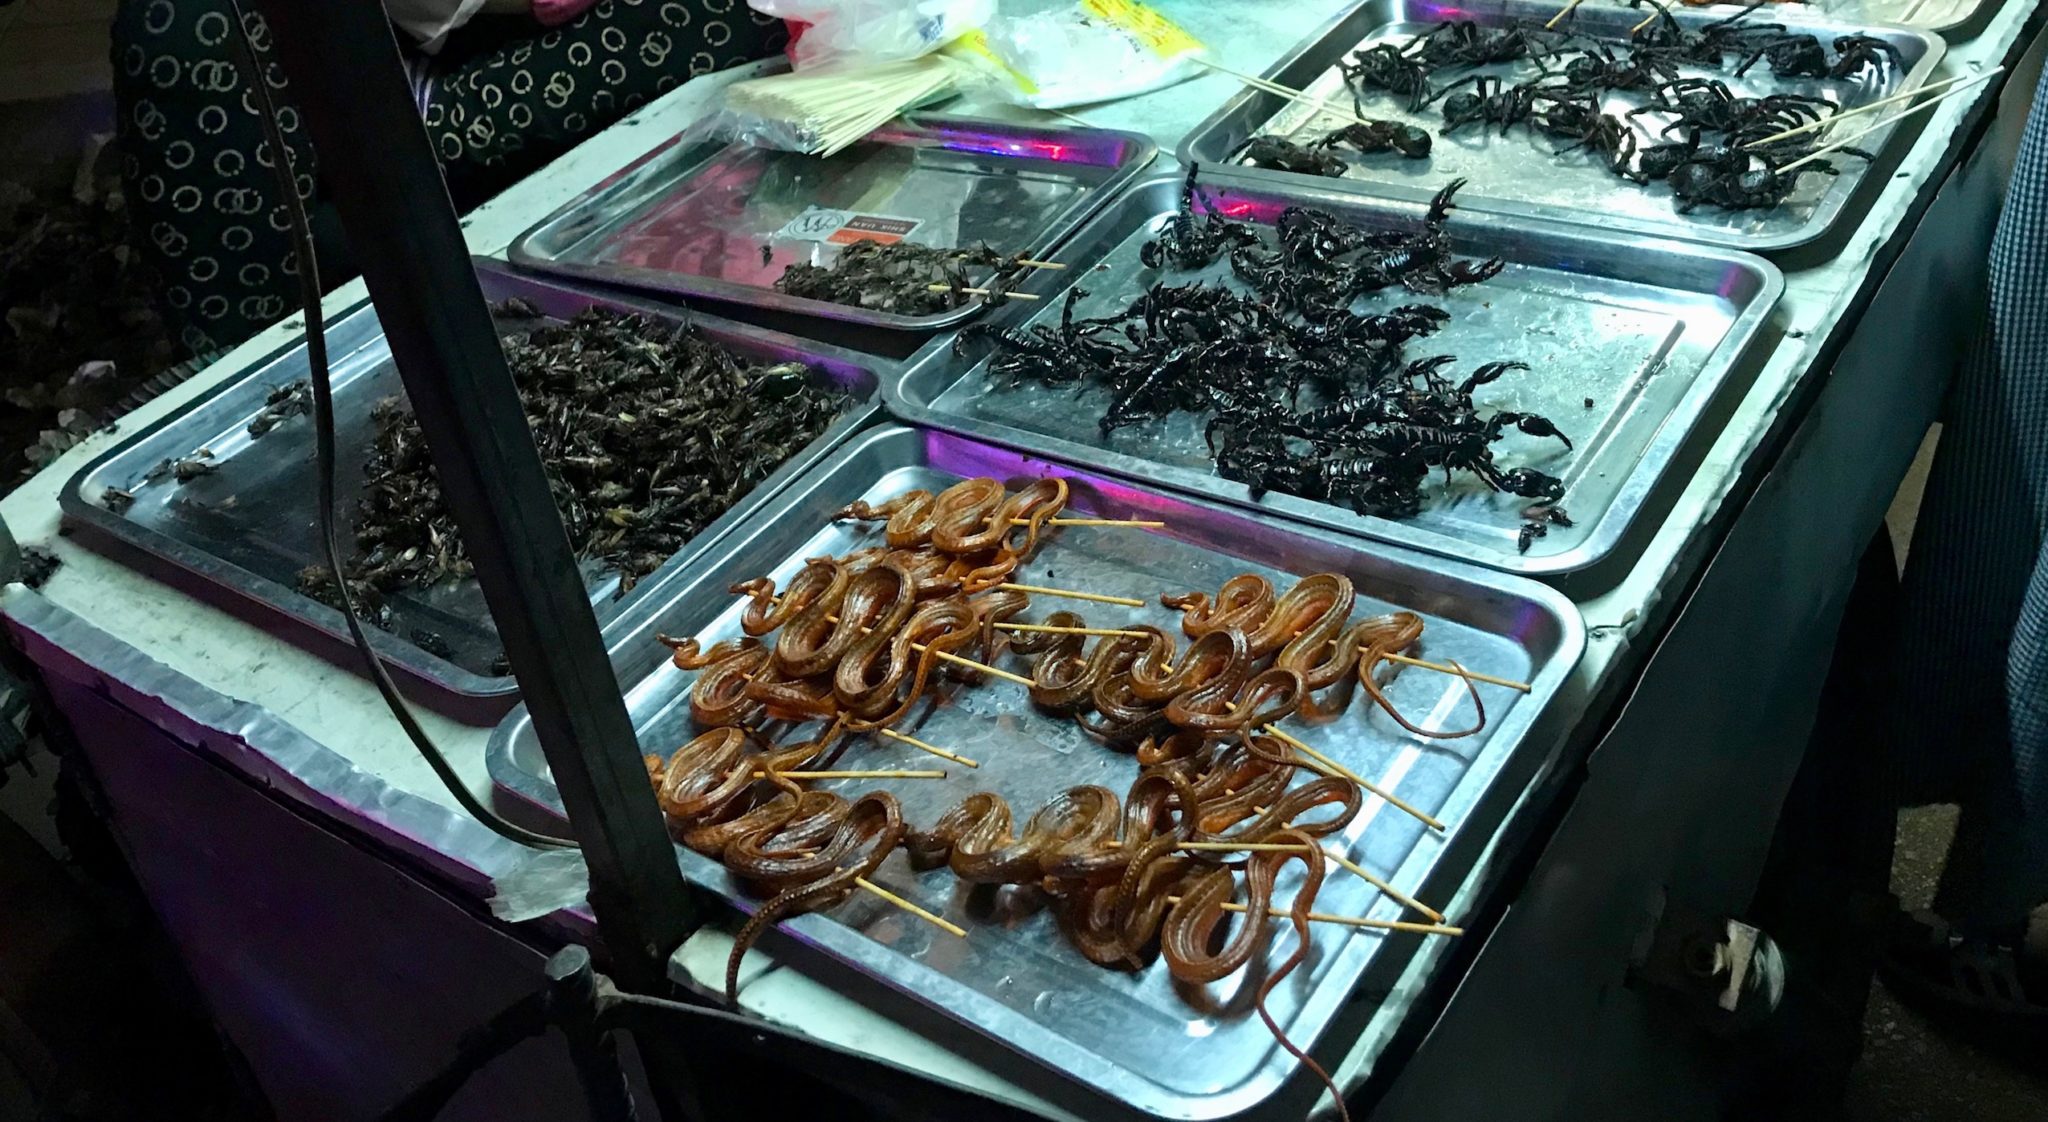 Fried snakes and tarantulas at a market